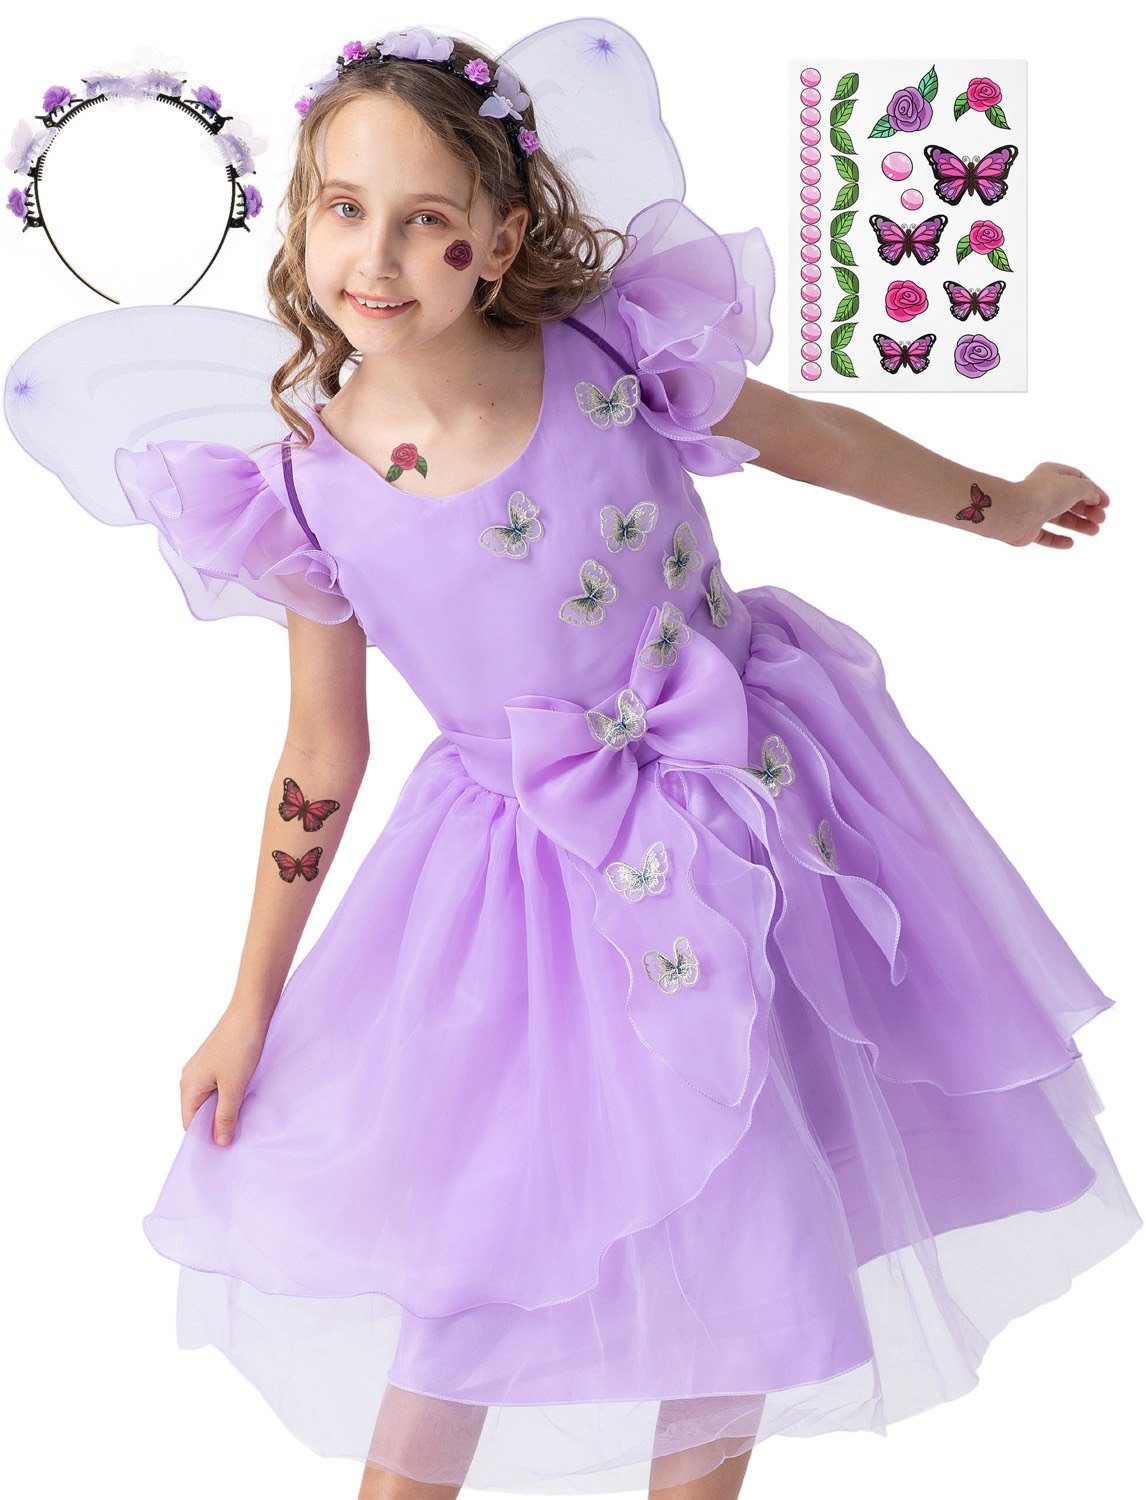 Corimori Prinzessin-Kostüm Prinzessin Kleid Kostüm-Set für Kinder Schmetterling Mira, Feenkleid, Kostüm Mira für Fasching, lila, Größe 104/110